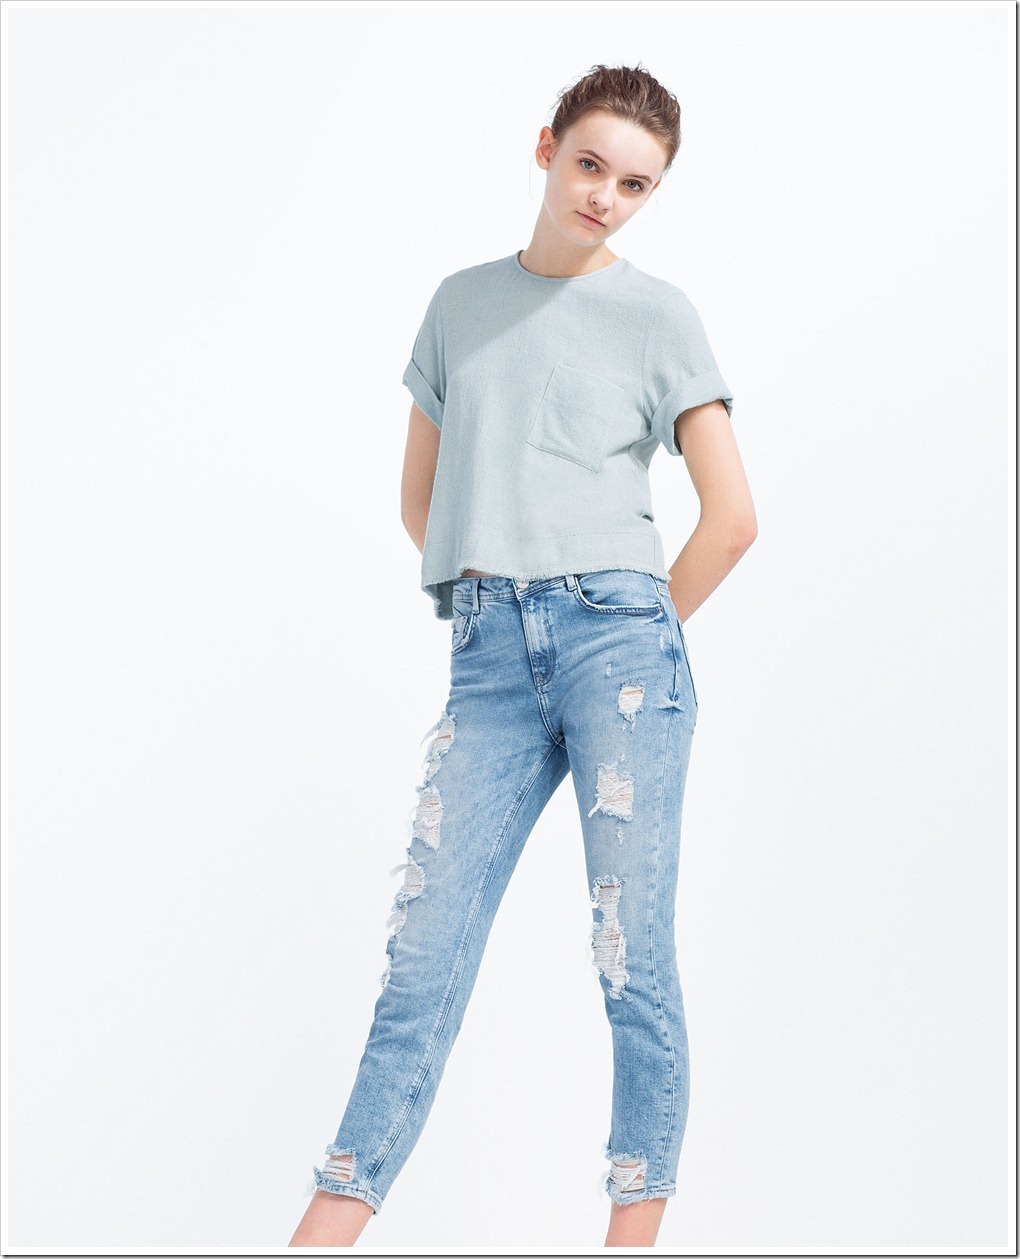 ZARA jeans for women : Denimsandjeans.com